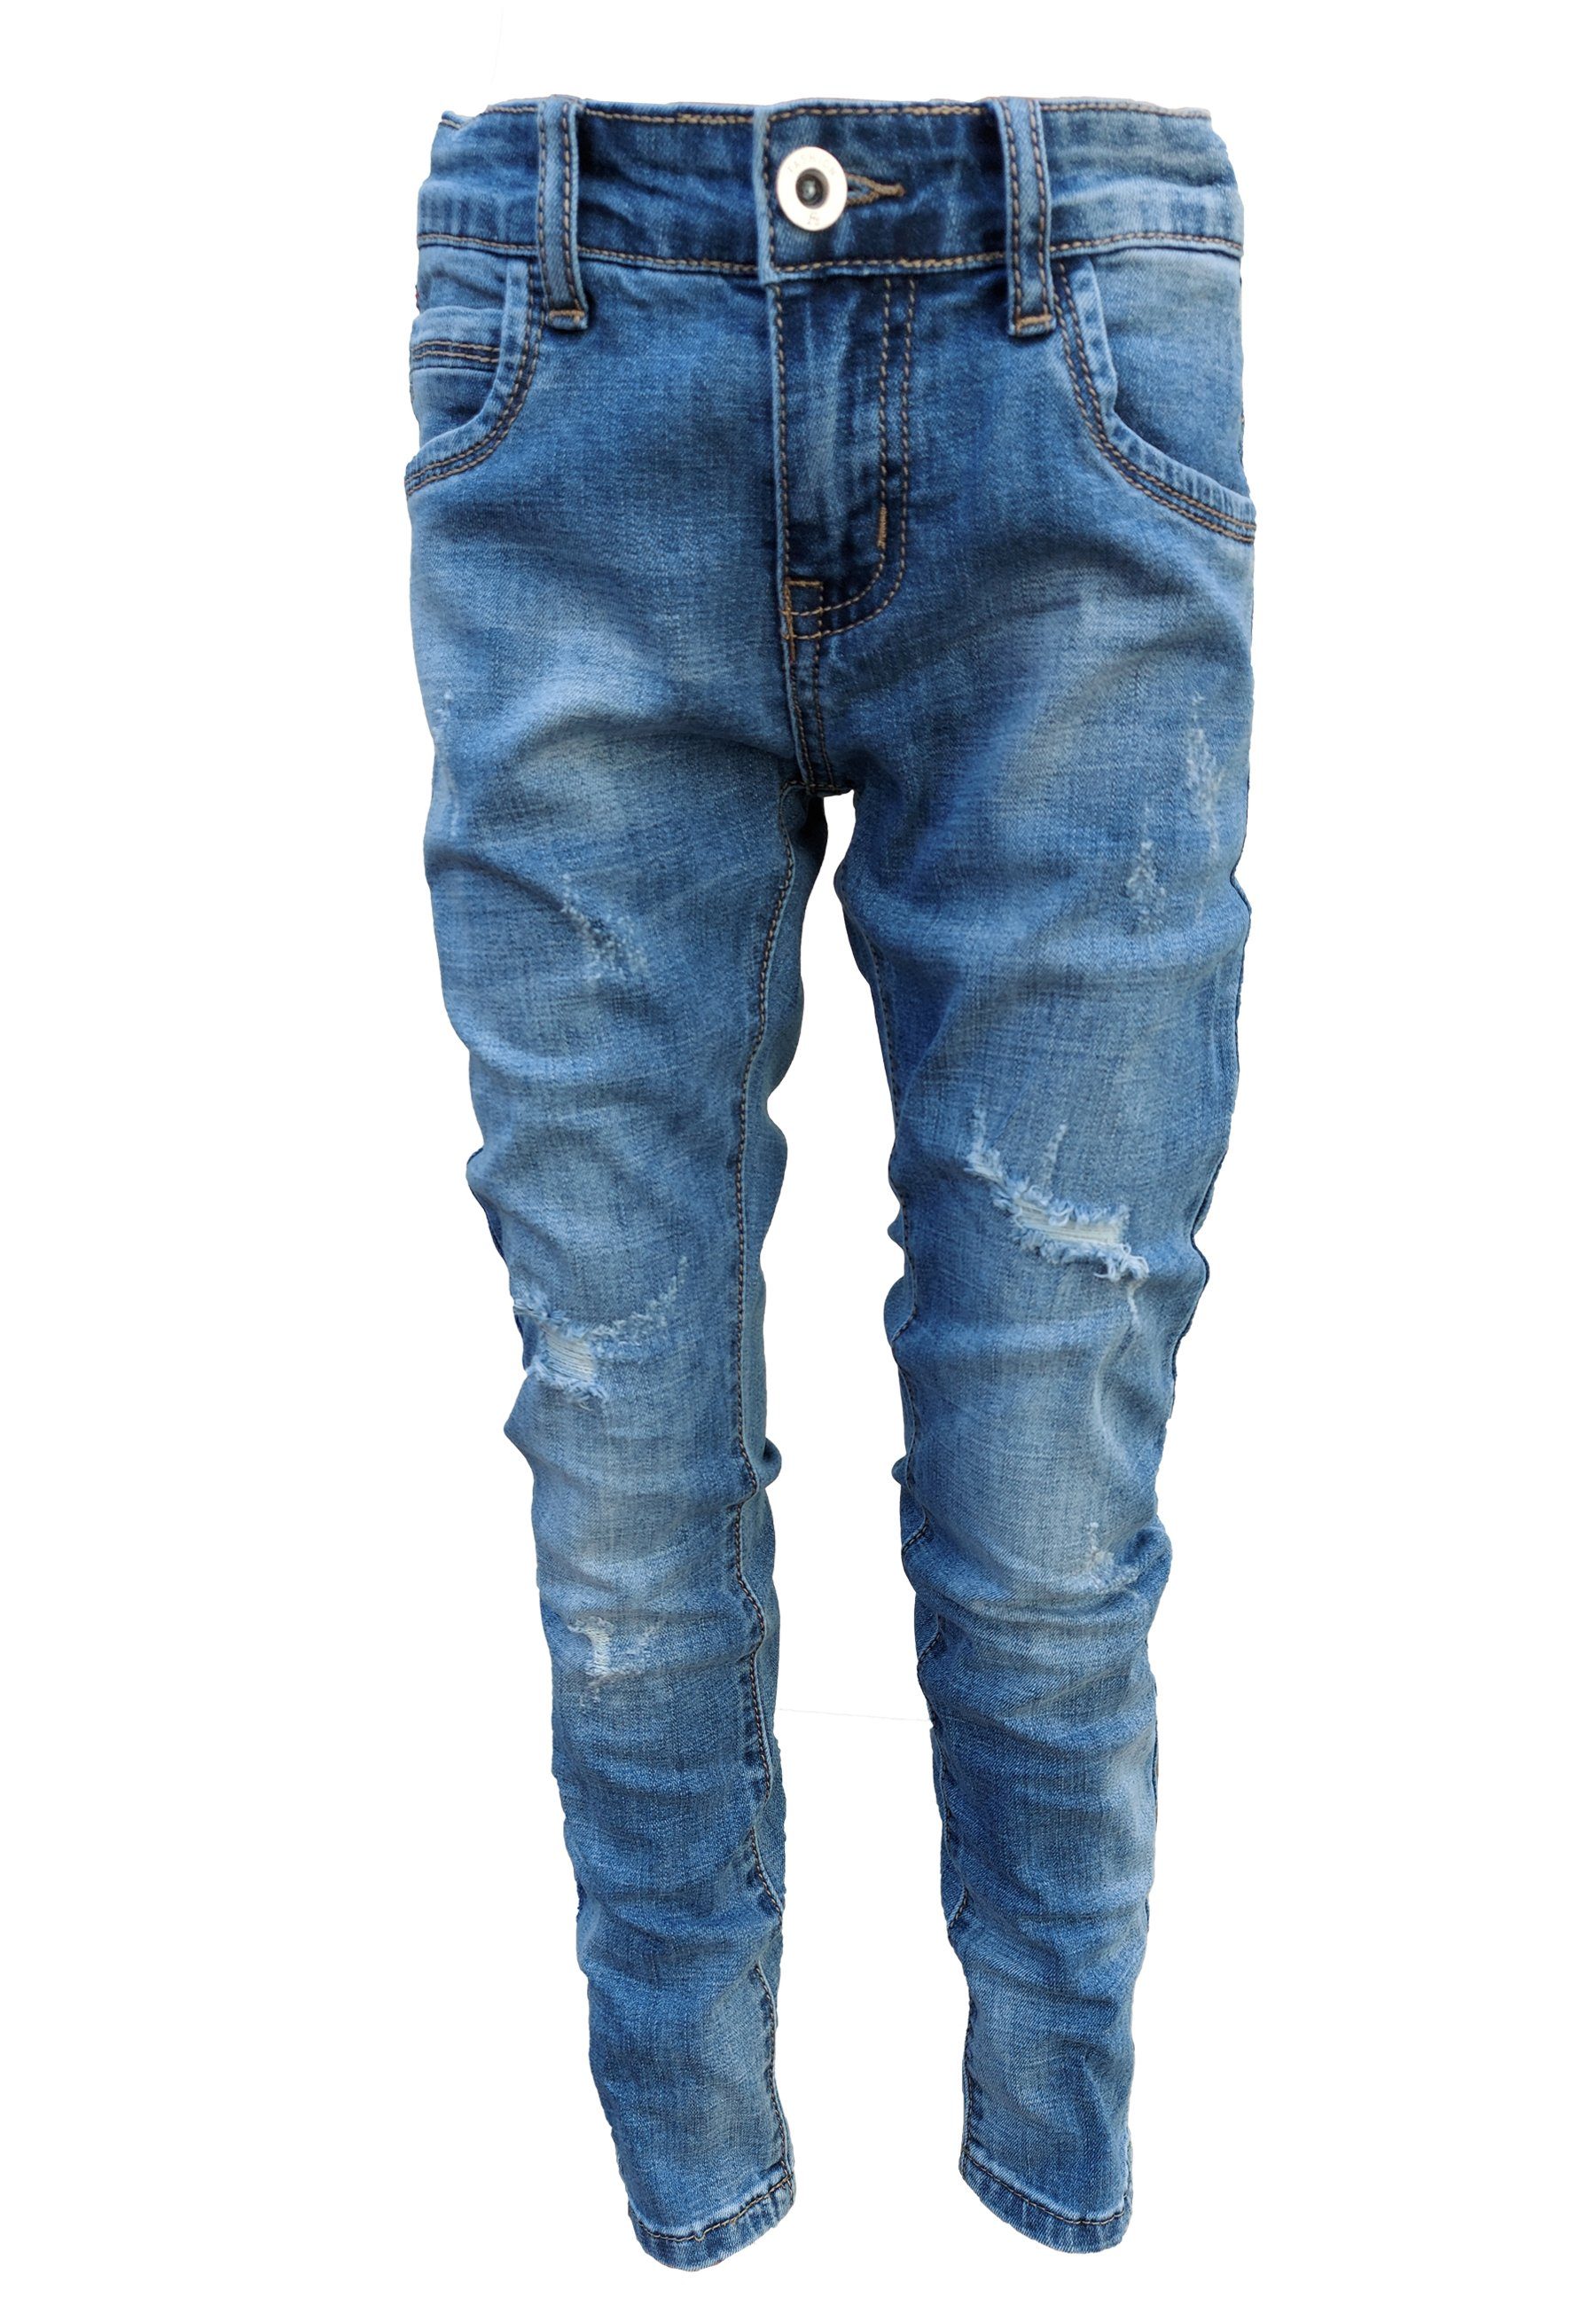 maximaler Rabatt Trends Family Bequeme Destroyed-Look im Jeans